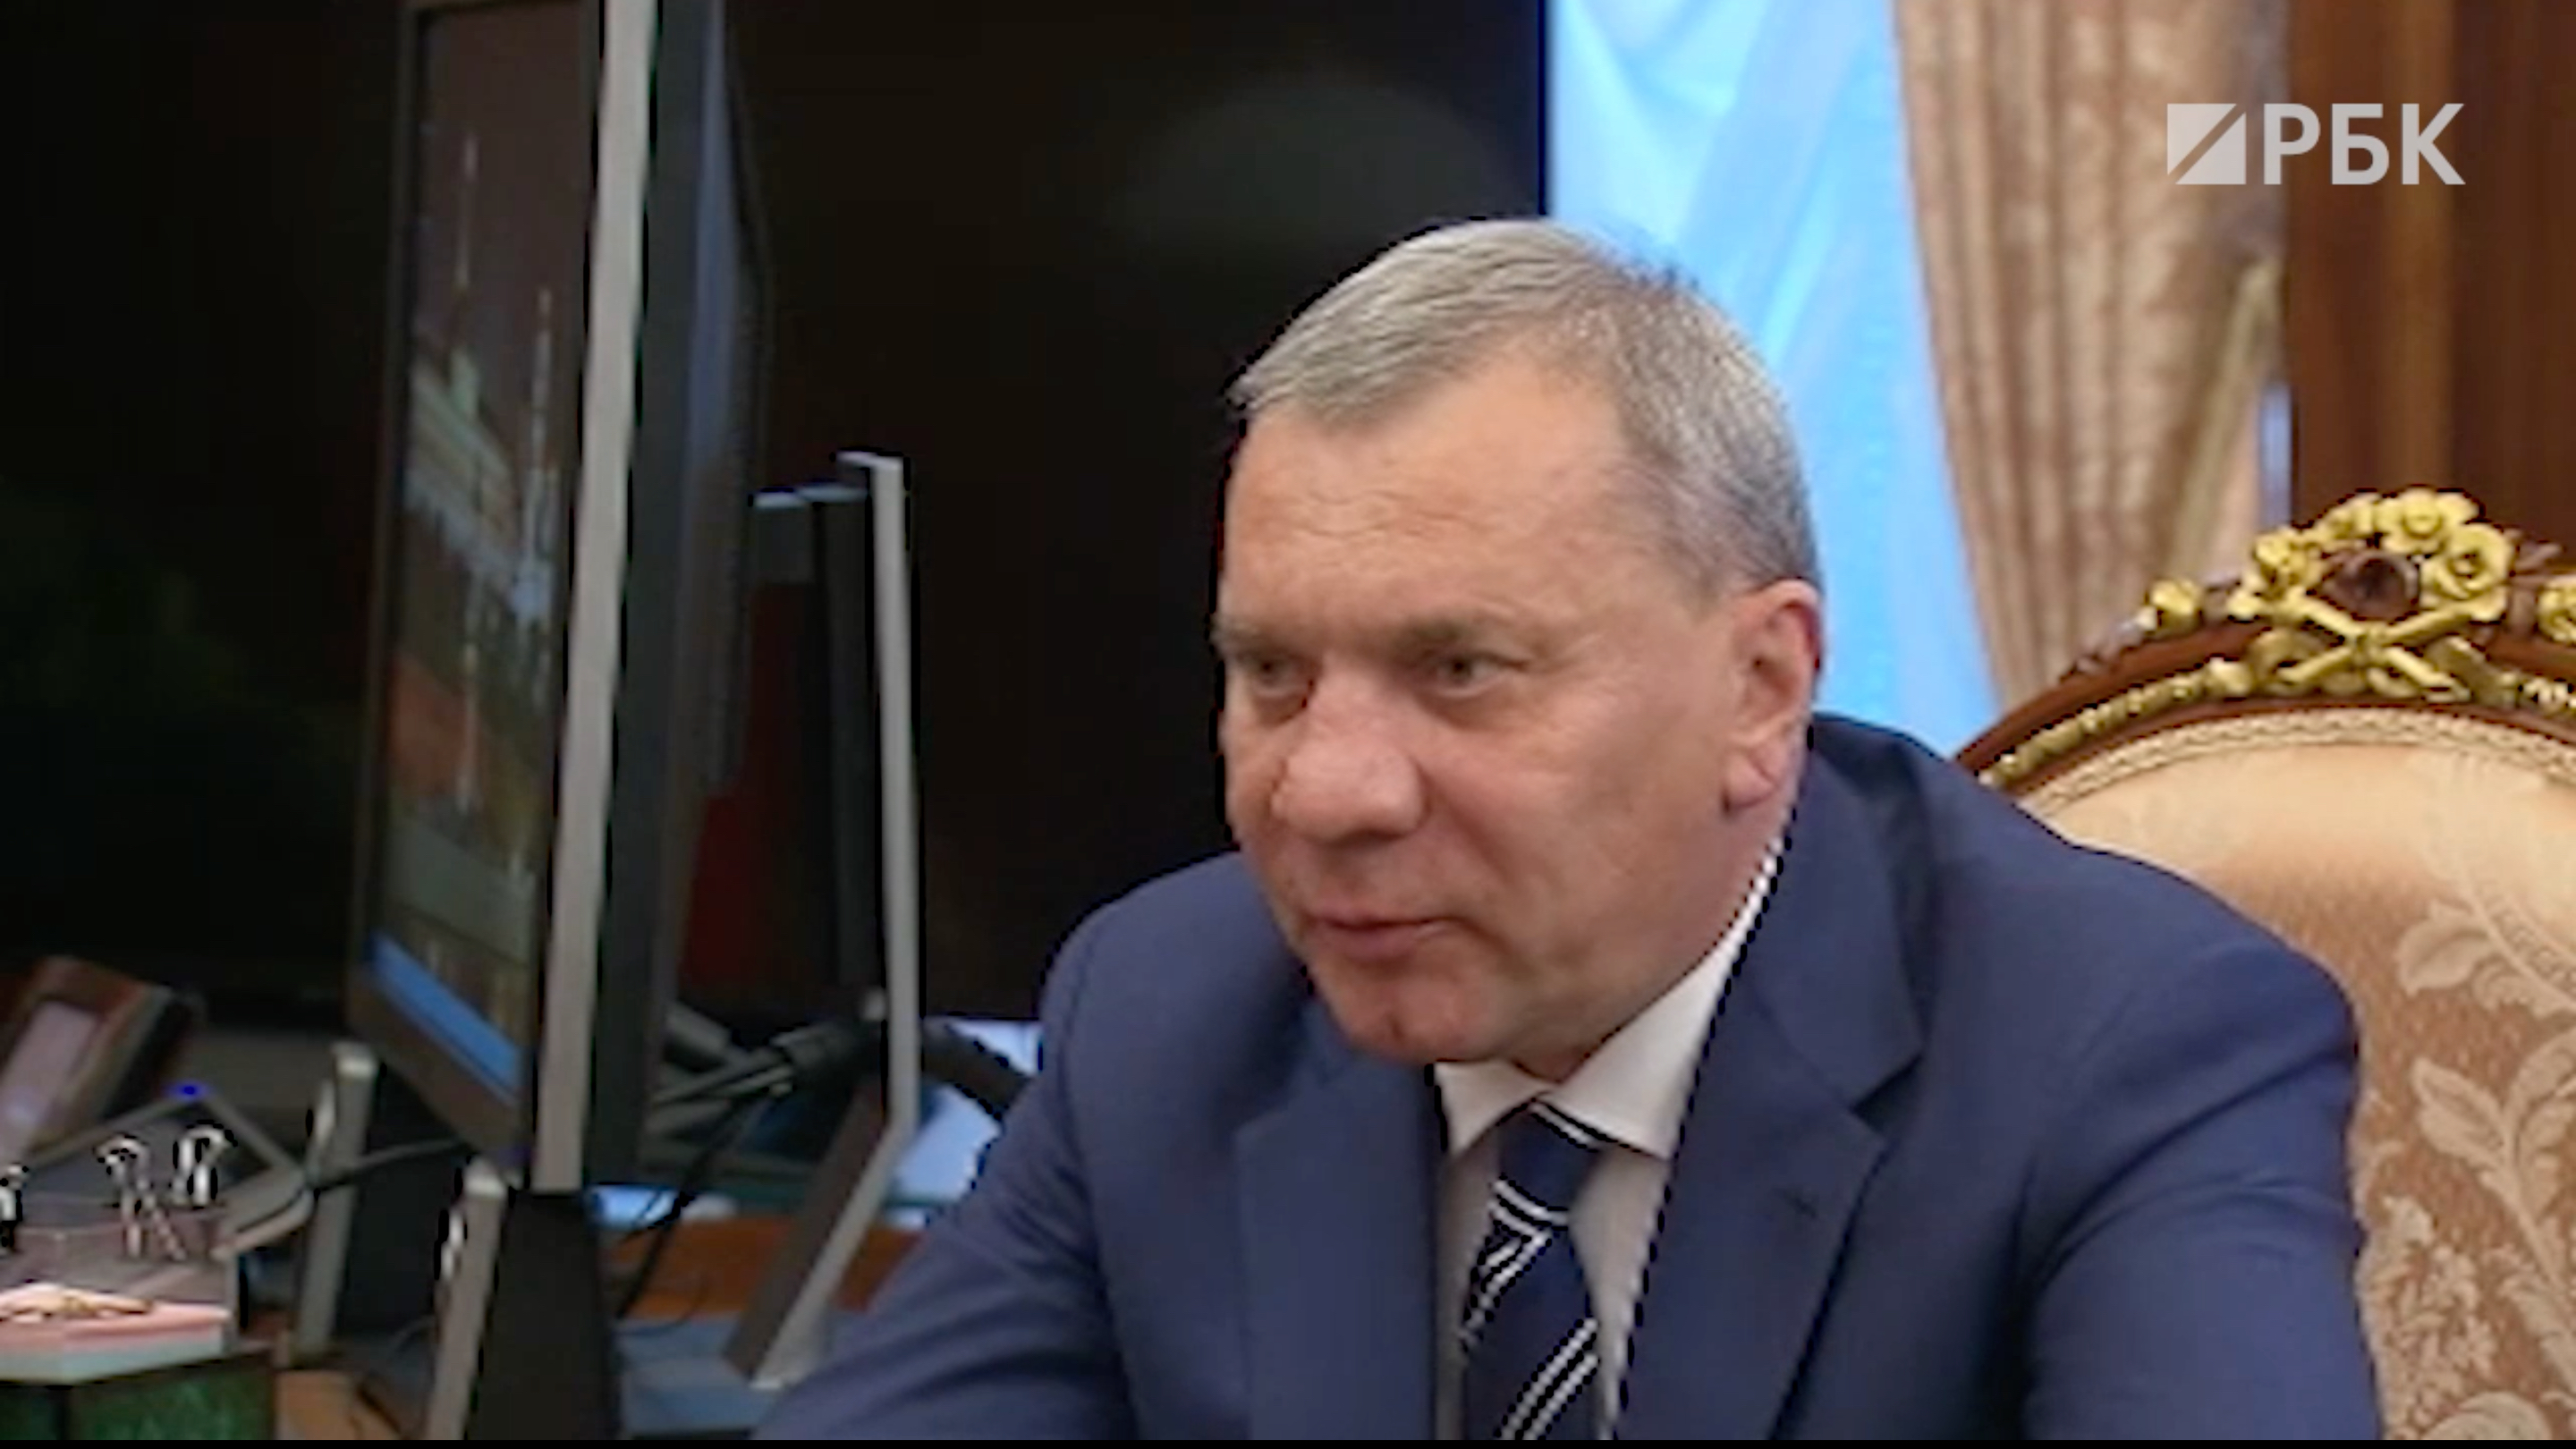 Борисов заявил, что дату ухода России с МКС еще не выбрали